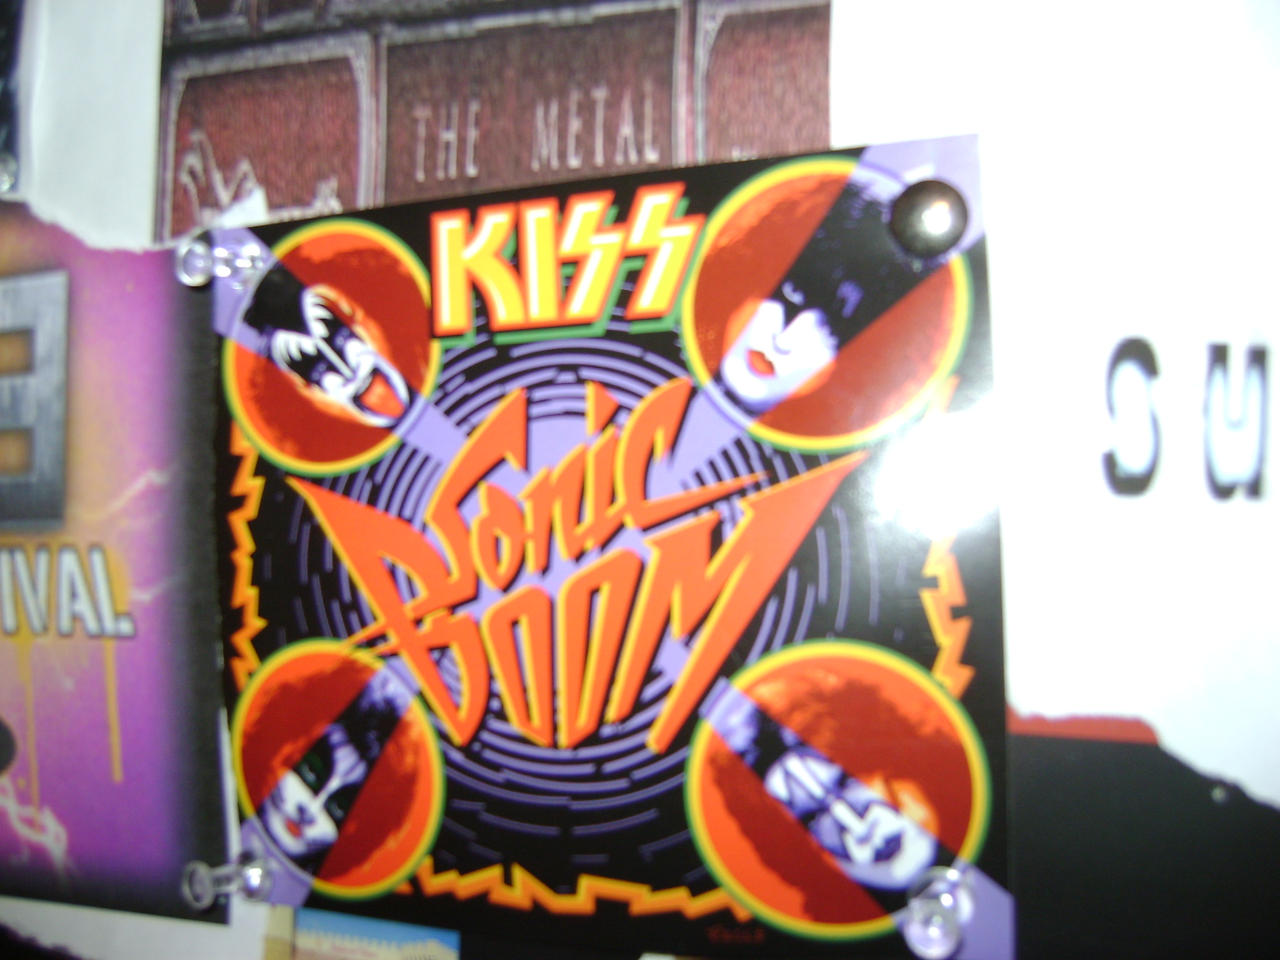 Sonic Boom - Album by KISS